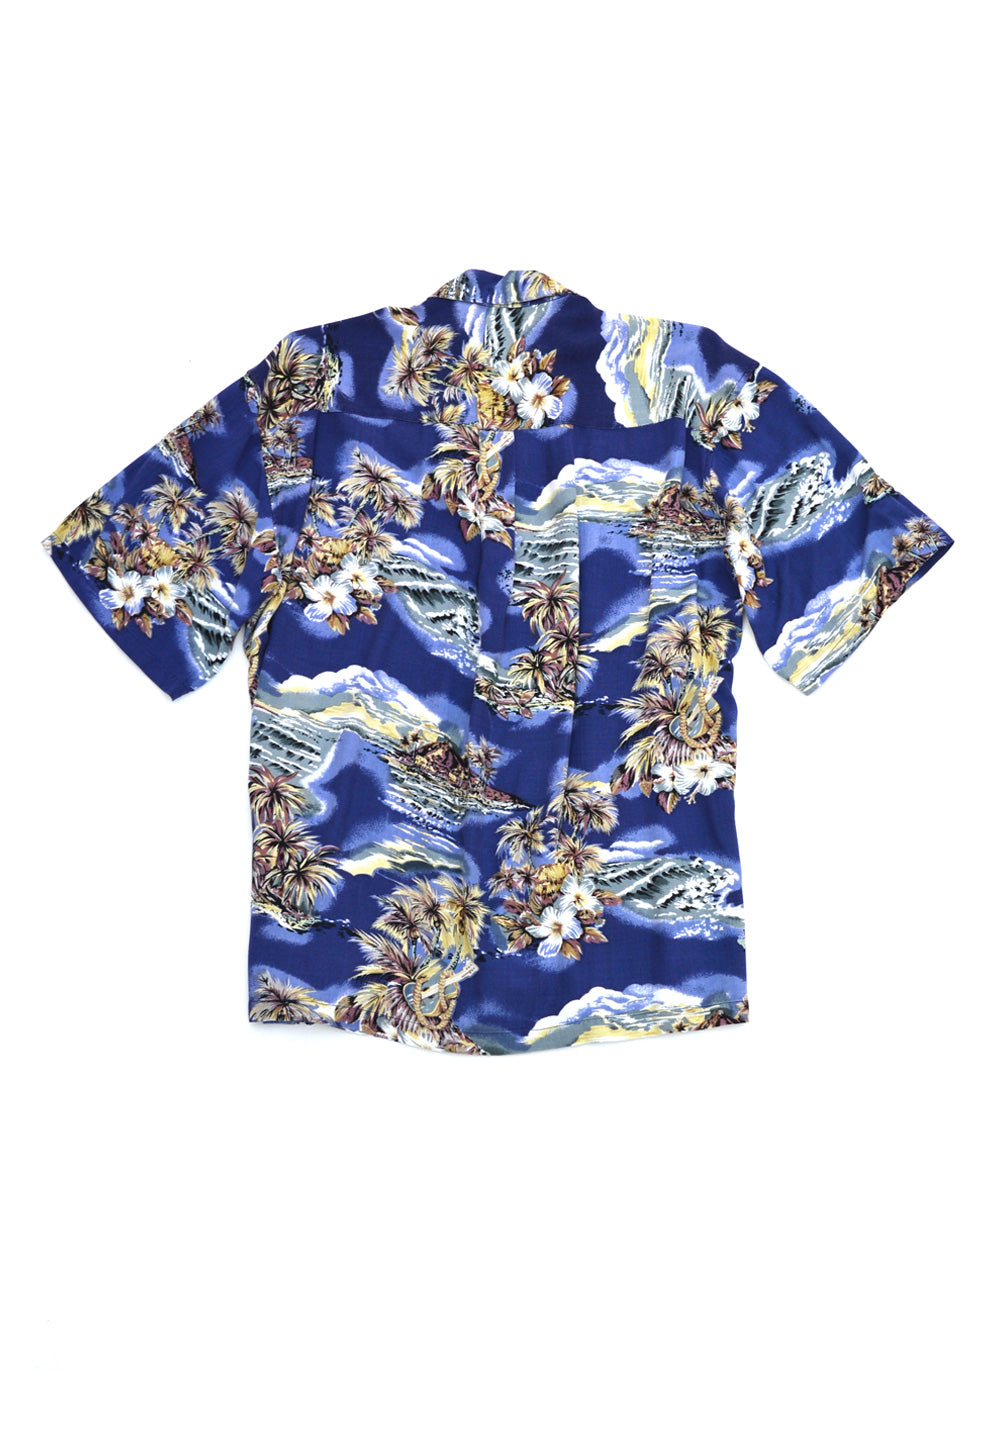 aloha shirt - navy - men's large